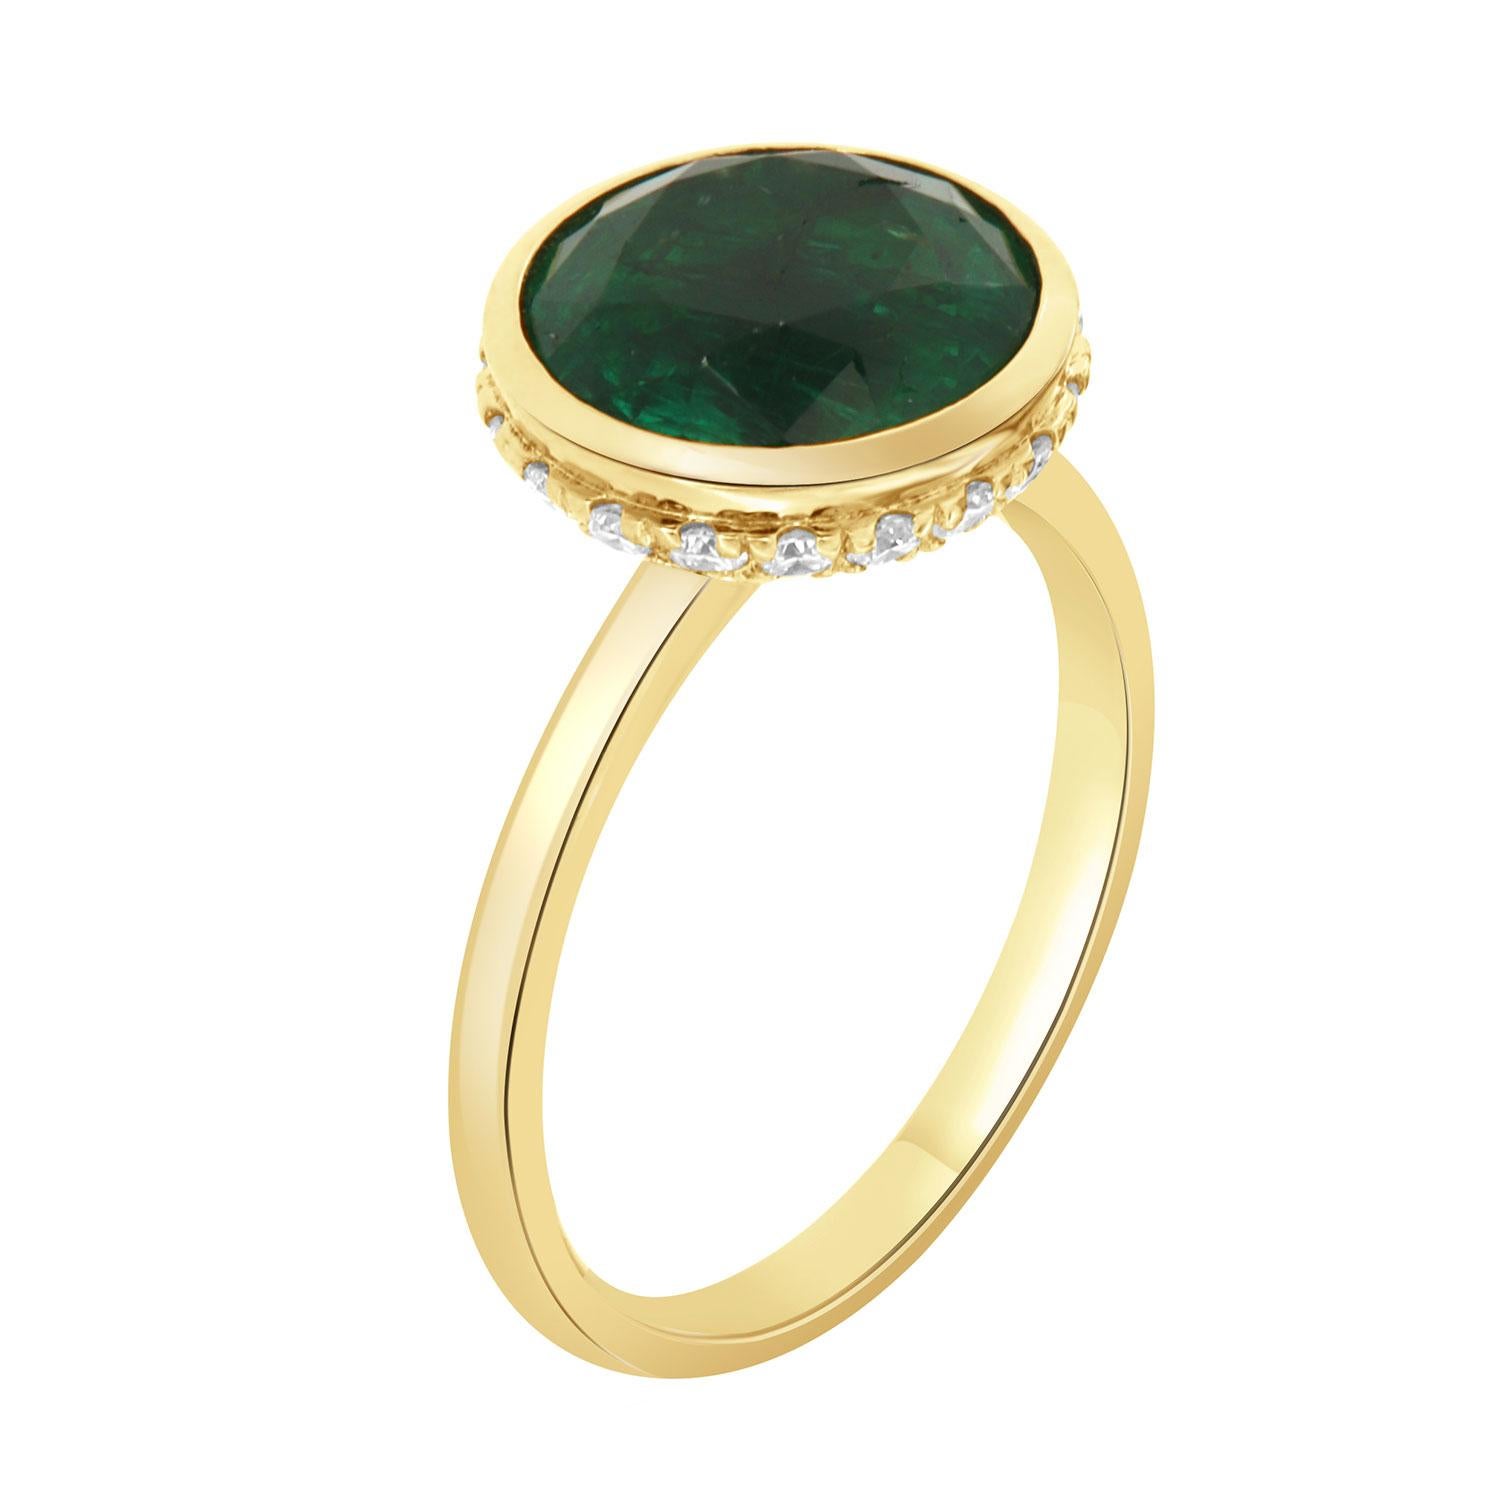 Dieser wunderschöne Ring aus 18 Karat Gelbgold ist mit einem GIA-zertifizierten, runden grünen Smaragd von 3,72 Karat besetzt.  Ein versteckter Halo aus runden Brillanten umgibt die Krone auf einem 2,00 mm breiten Band. 
Das Gesamtgewicht der